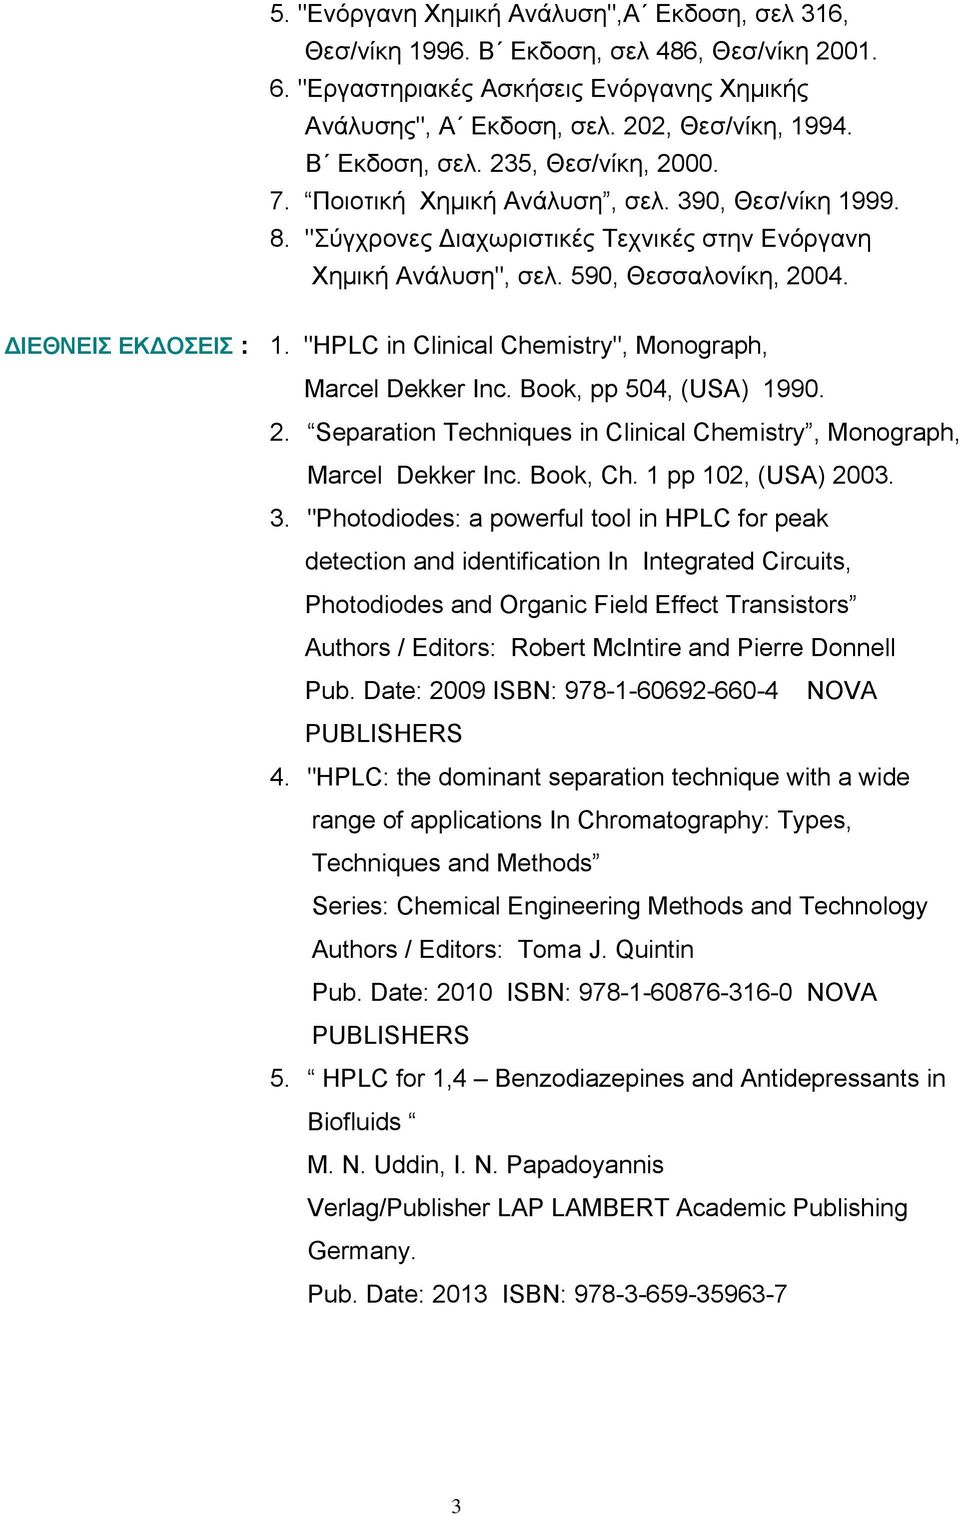 ΔΙΕΘΝΕΙΣ ΕΚΔΟΣΕΙΣ : 1. "HPLC in Clinical Chemistry", Monograph, Marcel Dekker Inc. Book, pp 504, (USA) 1990. 2. Separation Techniques in Clinical Chemistry, Monograph, Marcel Dekker Inc. Book, Ch.